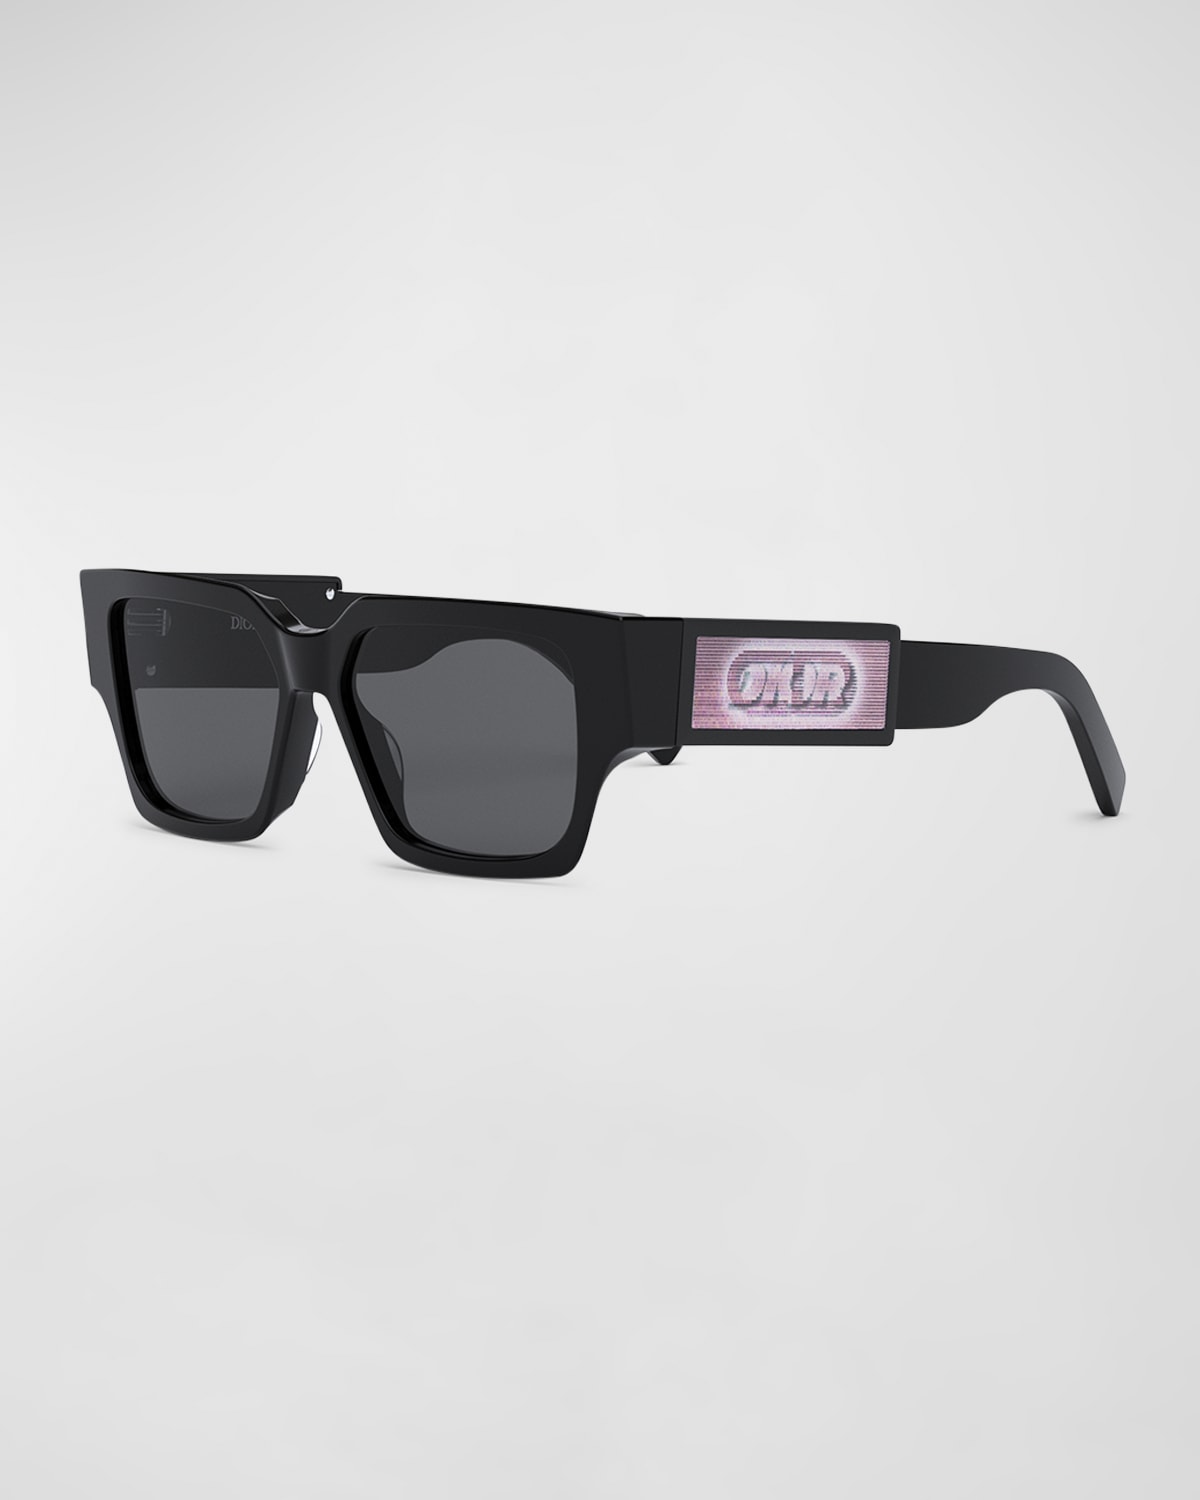 Dior Men's Cd Su 55mm Square Sunglasses In Shiny Black Smoke